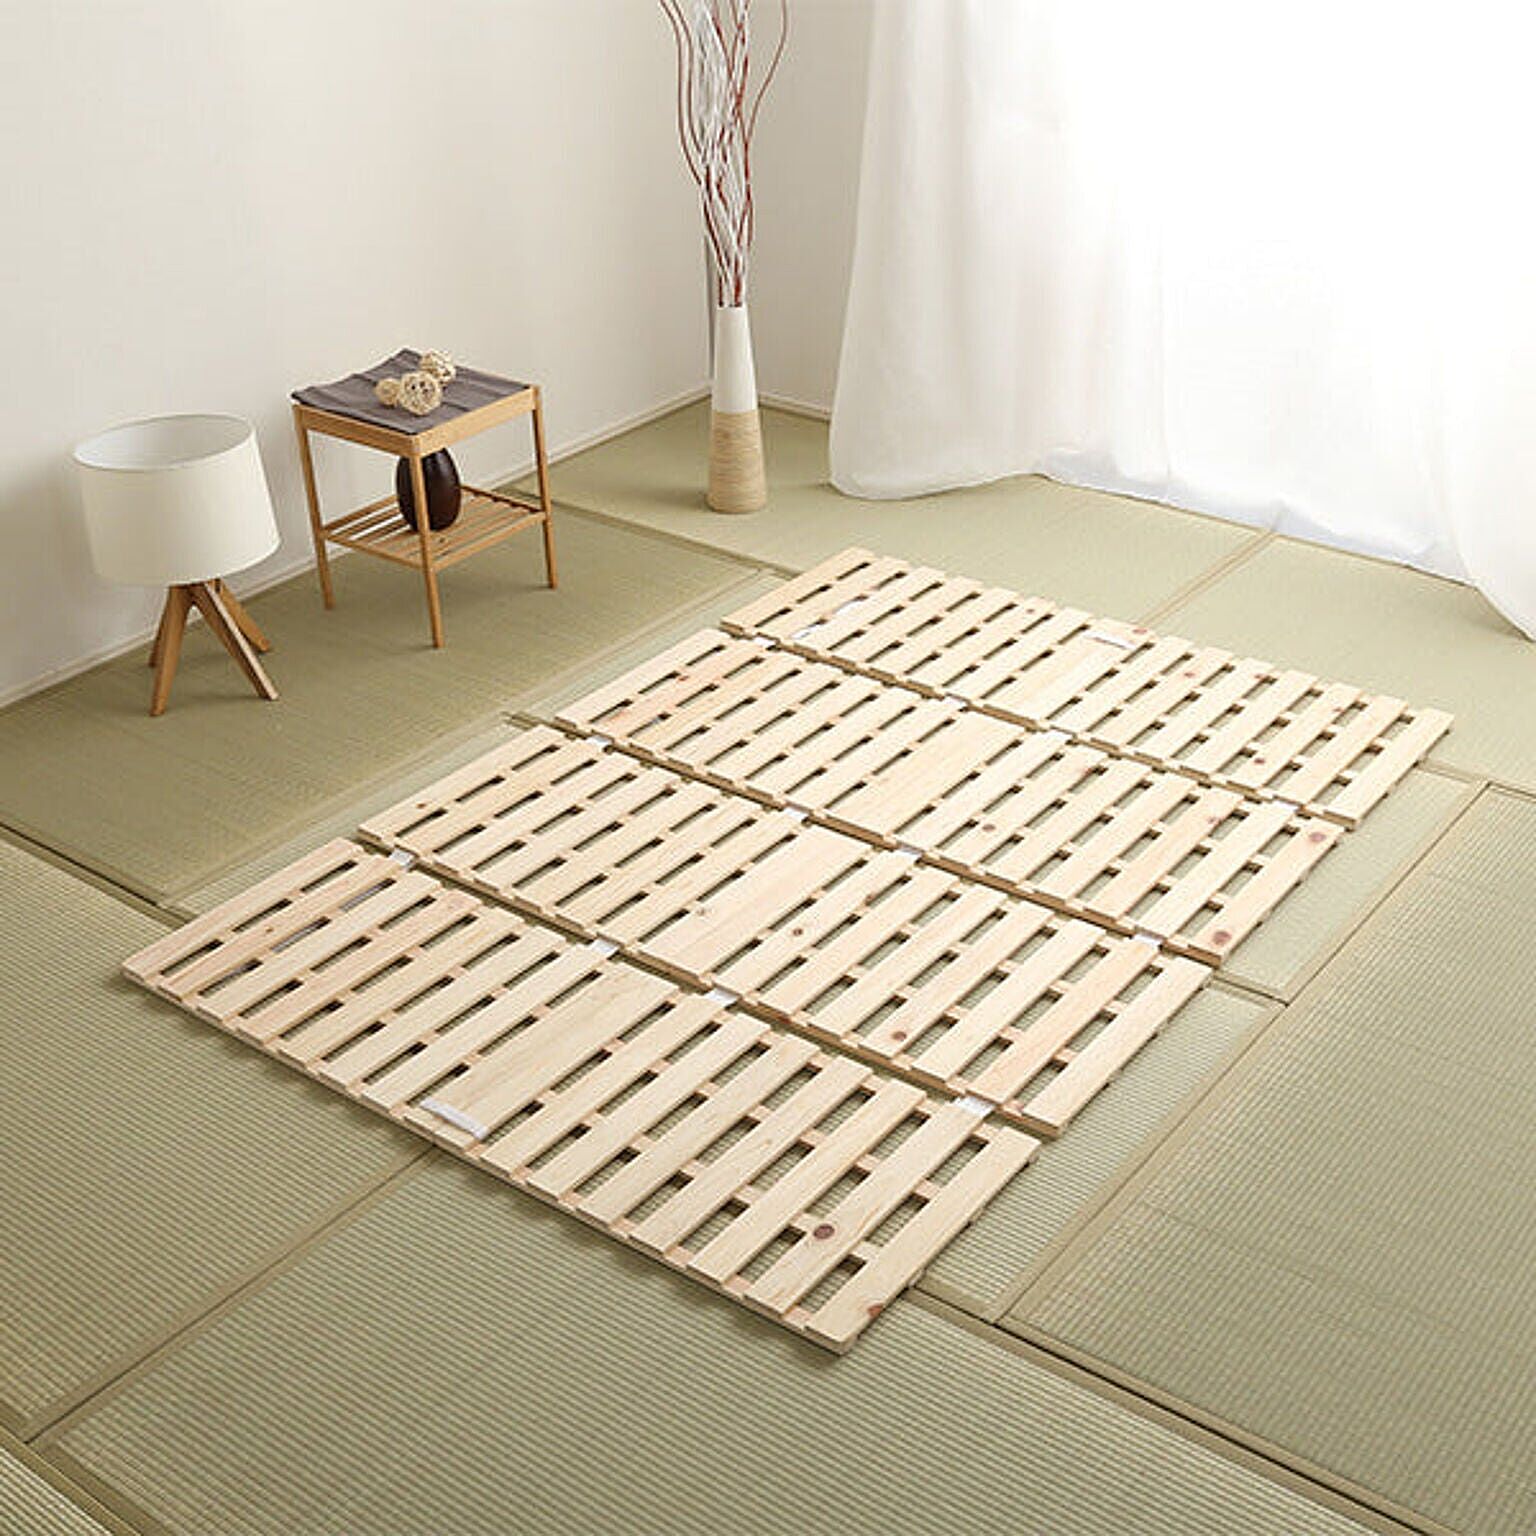 ホームテイスト ダブルすのこベッド 四つ折り式 檜仕様 涼風 ナチュラル